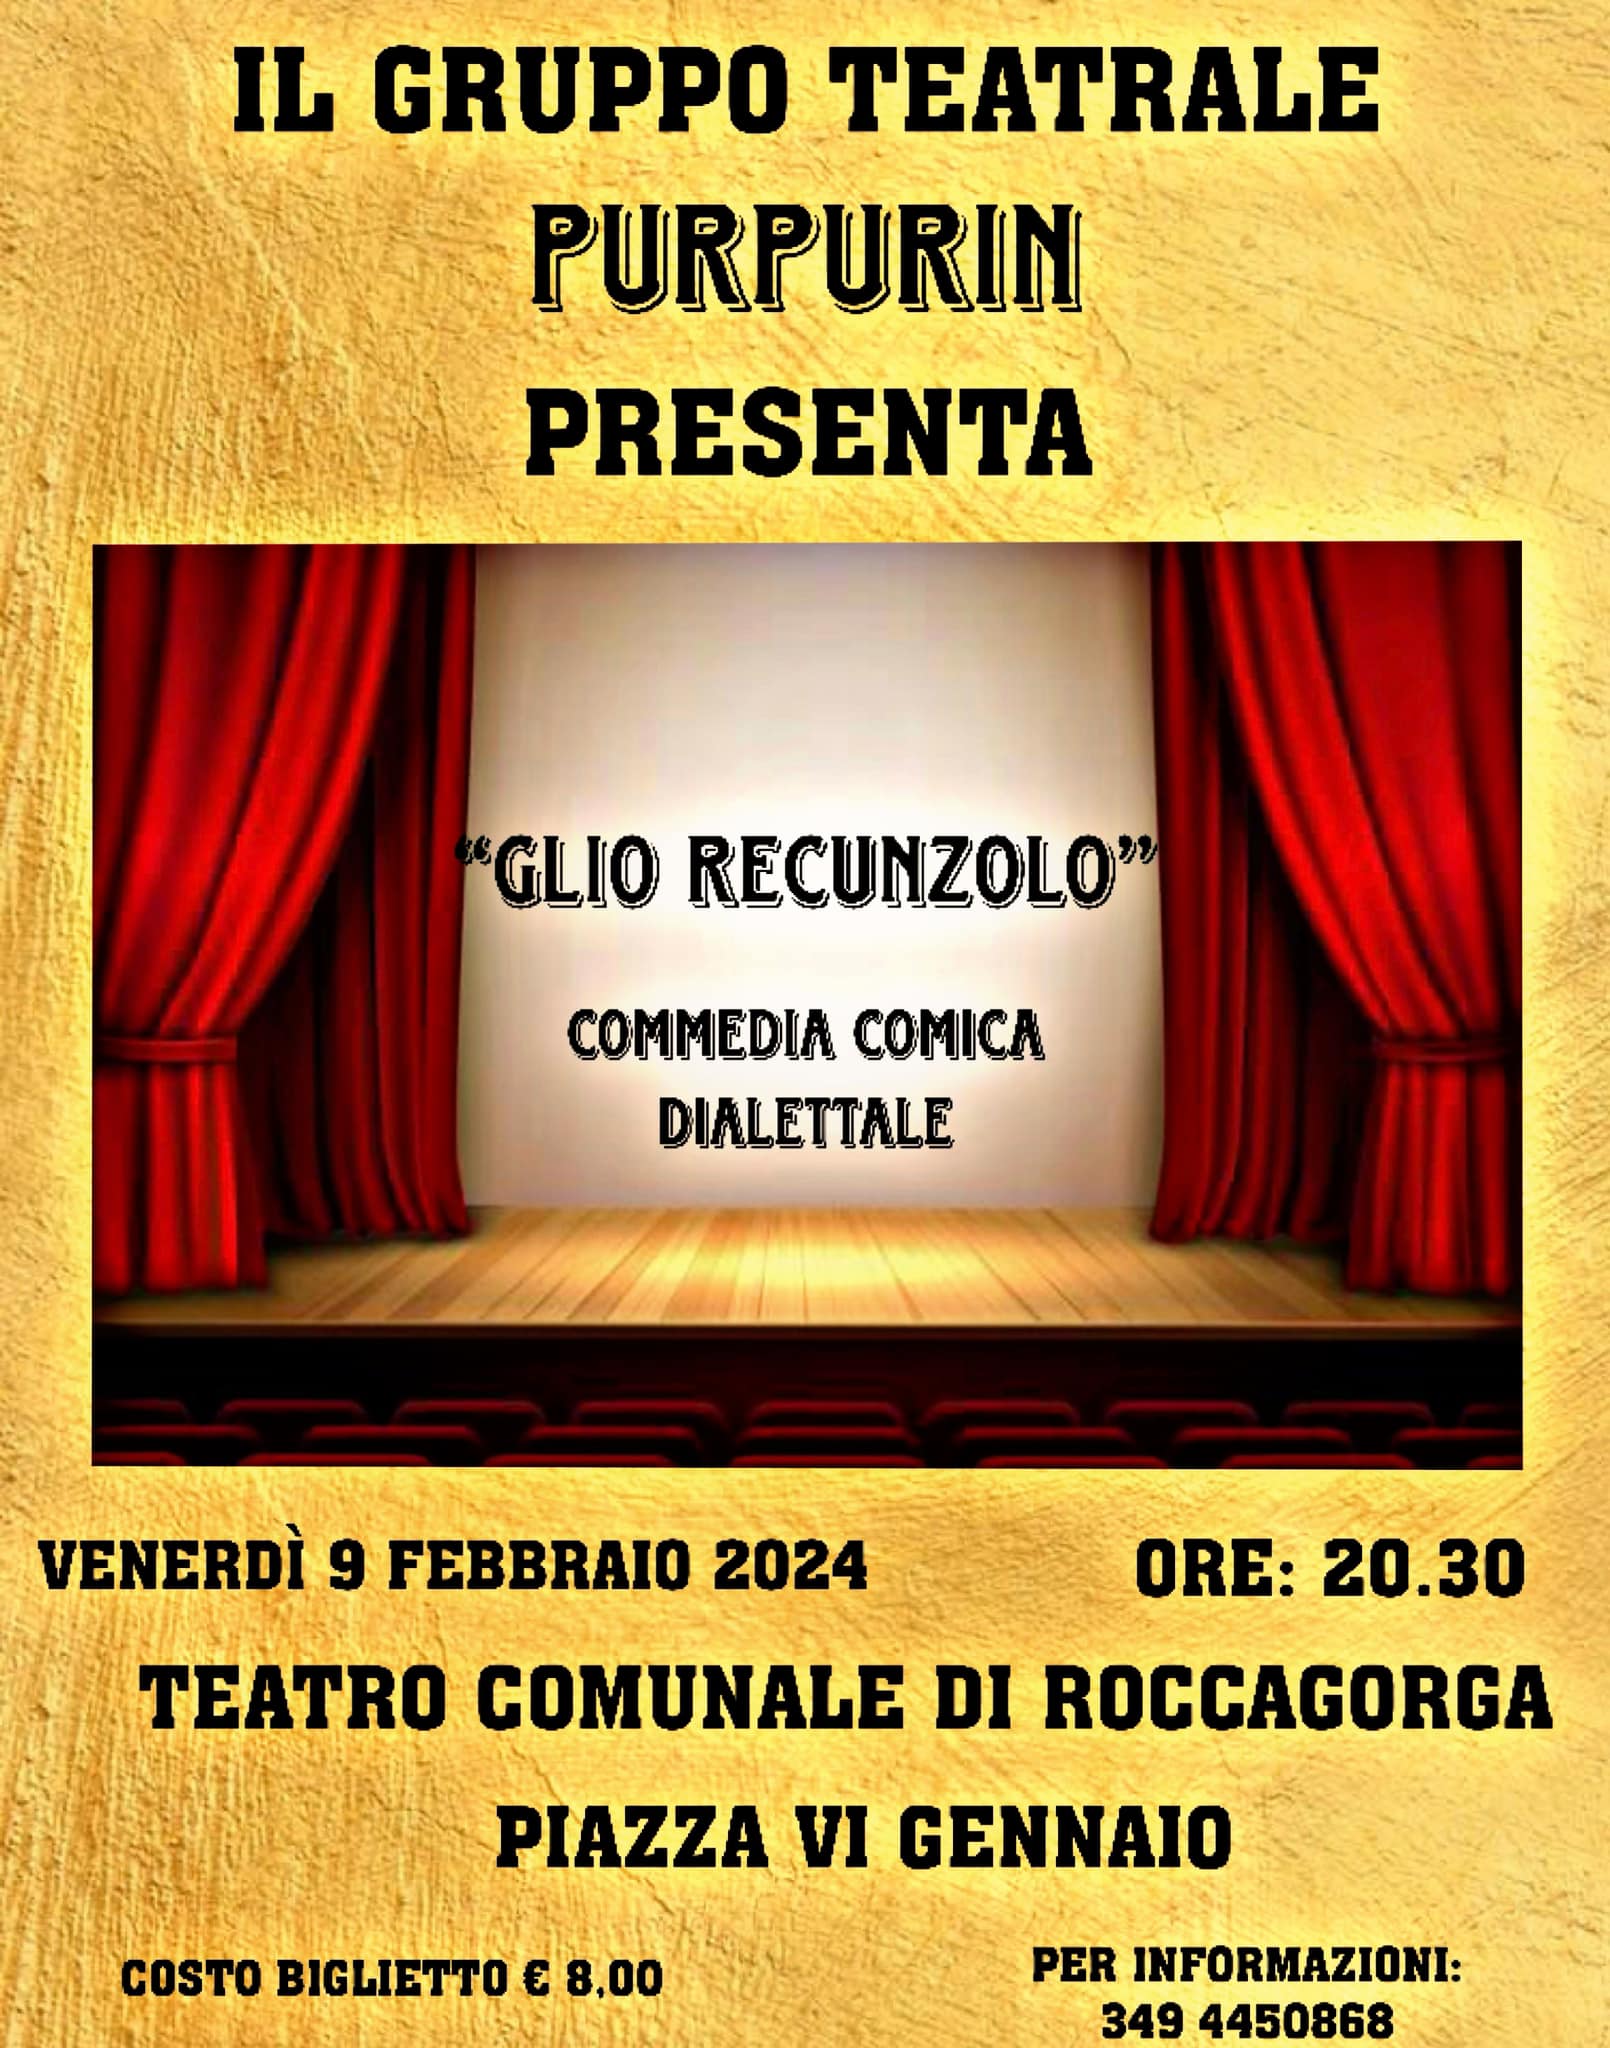 roccagorga-teatro-2024